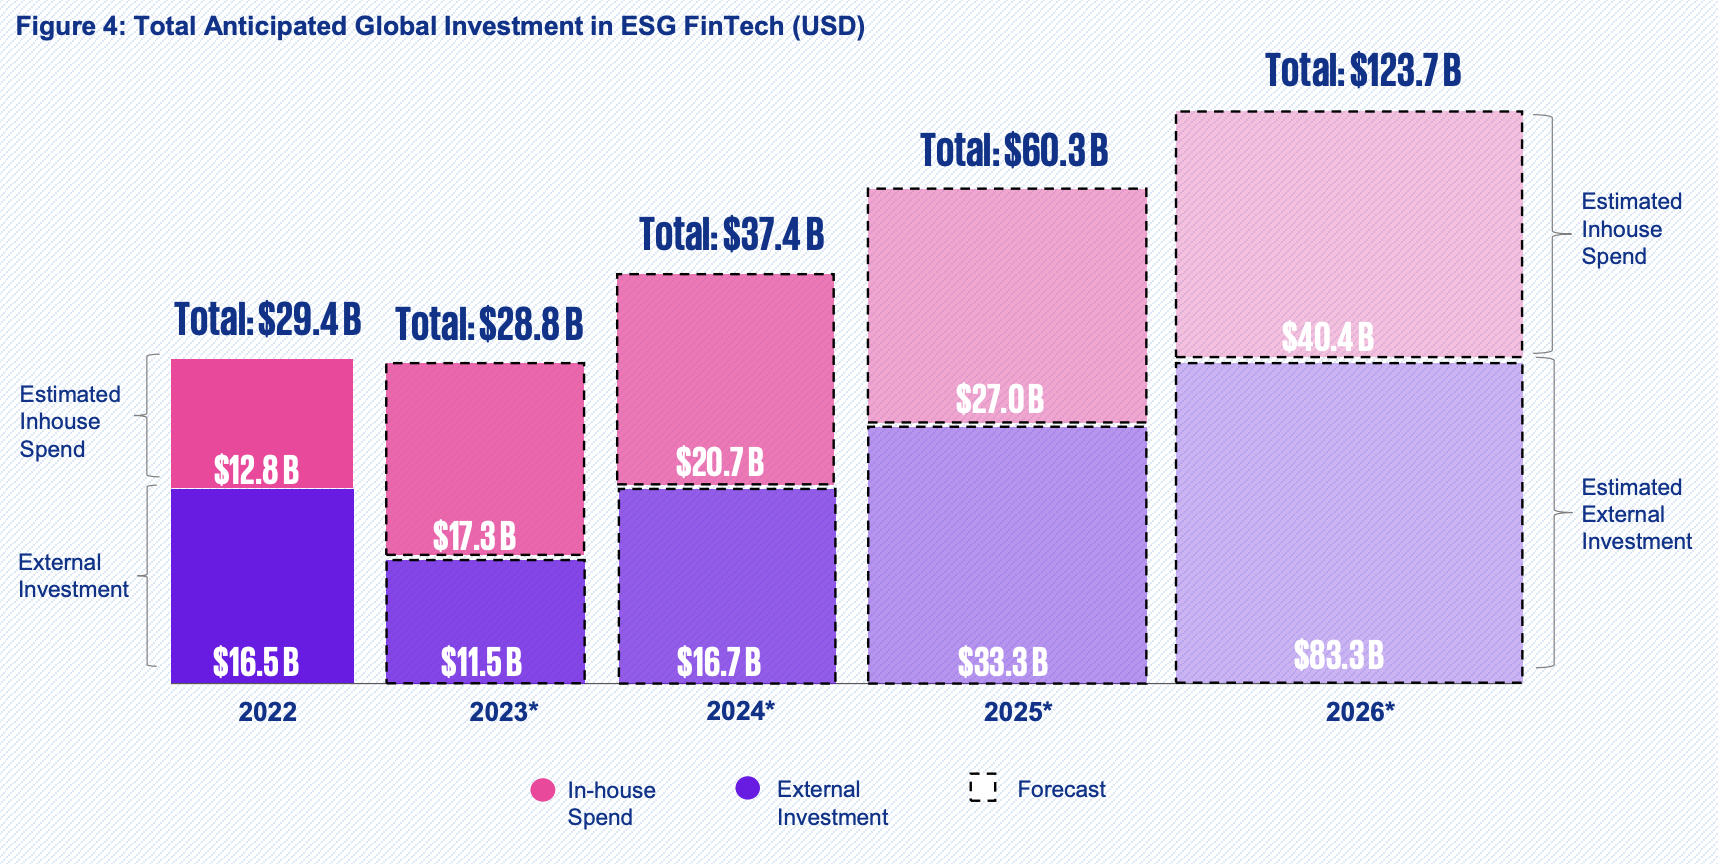 Kogu eeldatav globaalne investeering ESG fintechi (USD)